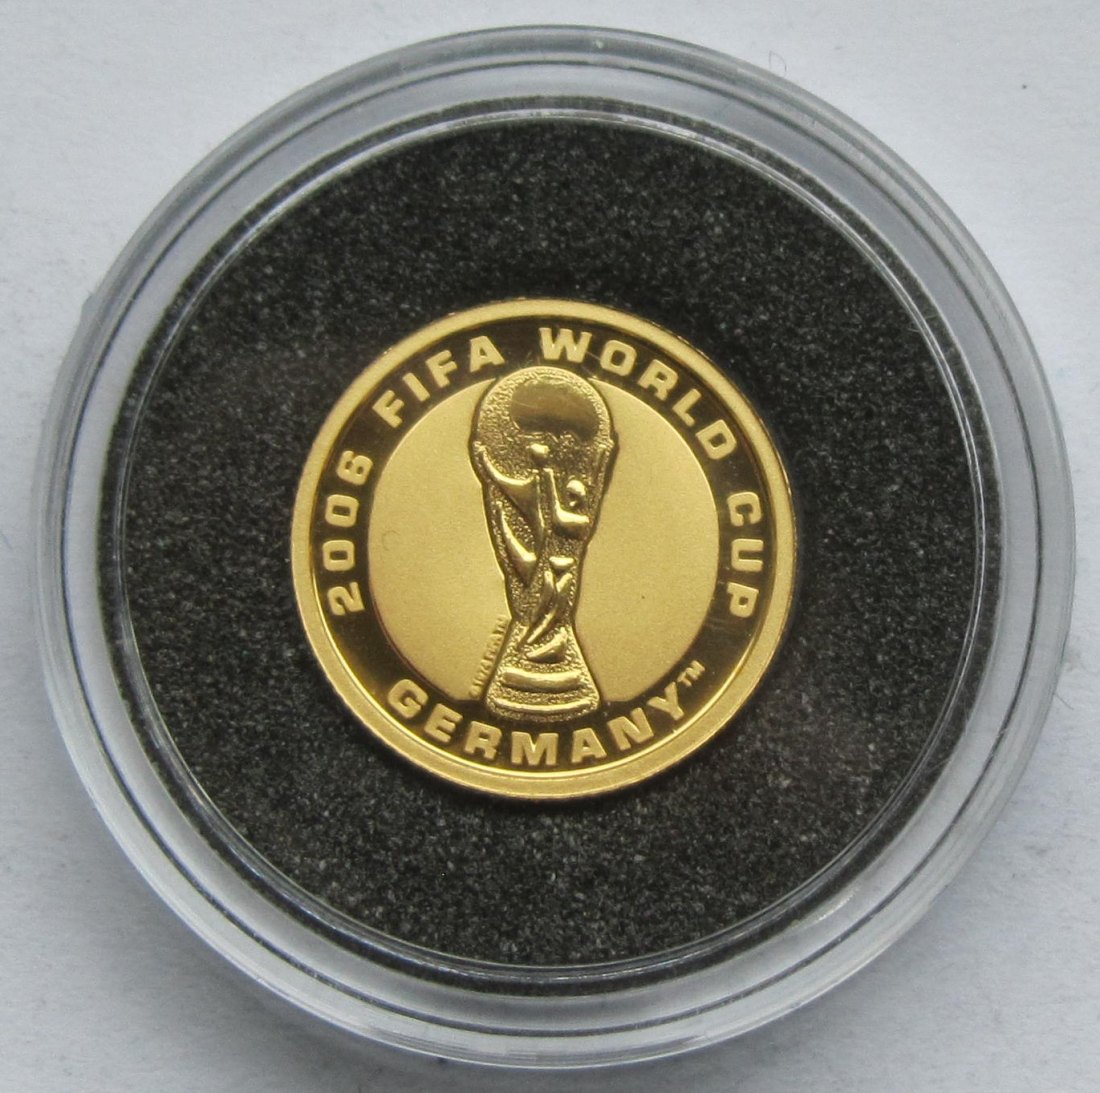  Australien: 4 Dollars Fußball-WM 2006, 1,24 g (1/25 Unze) Feingold   